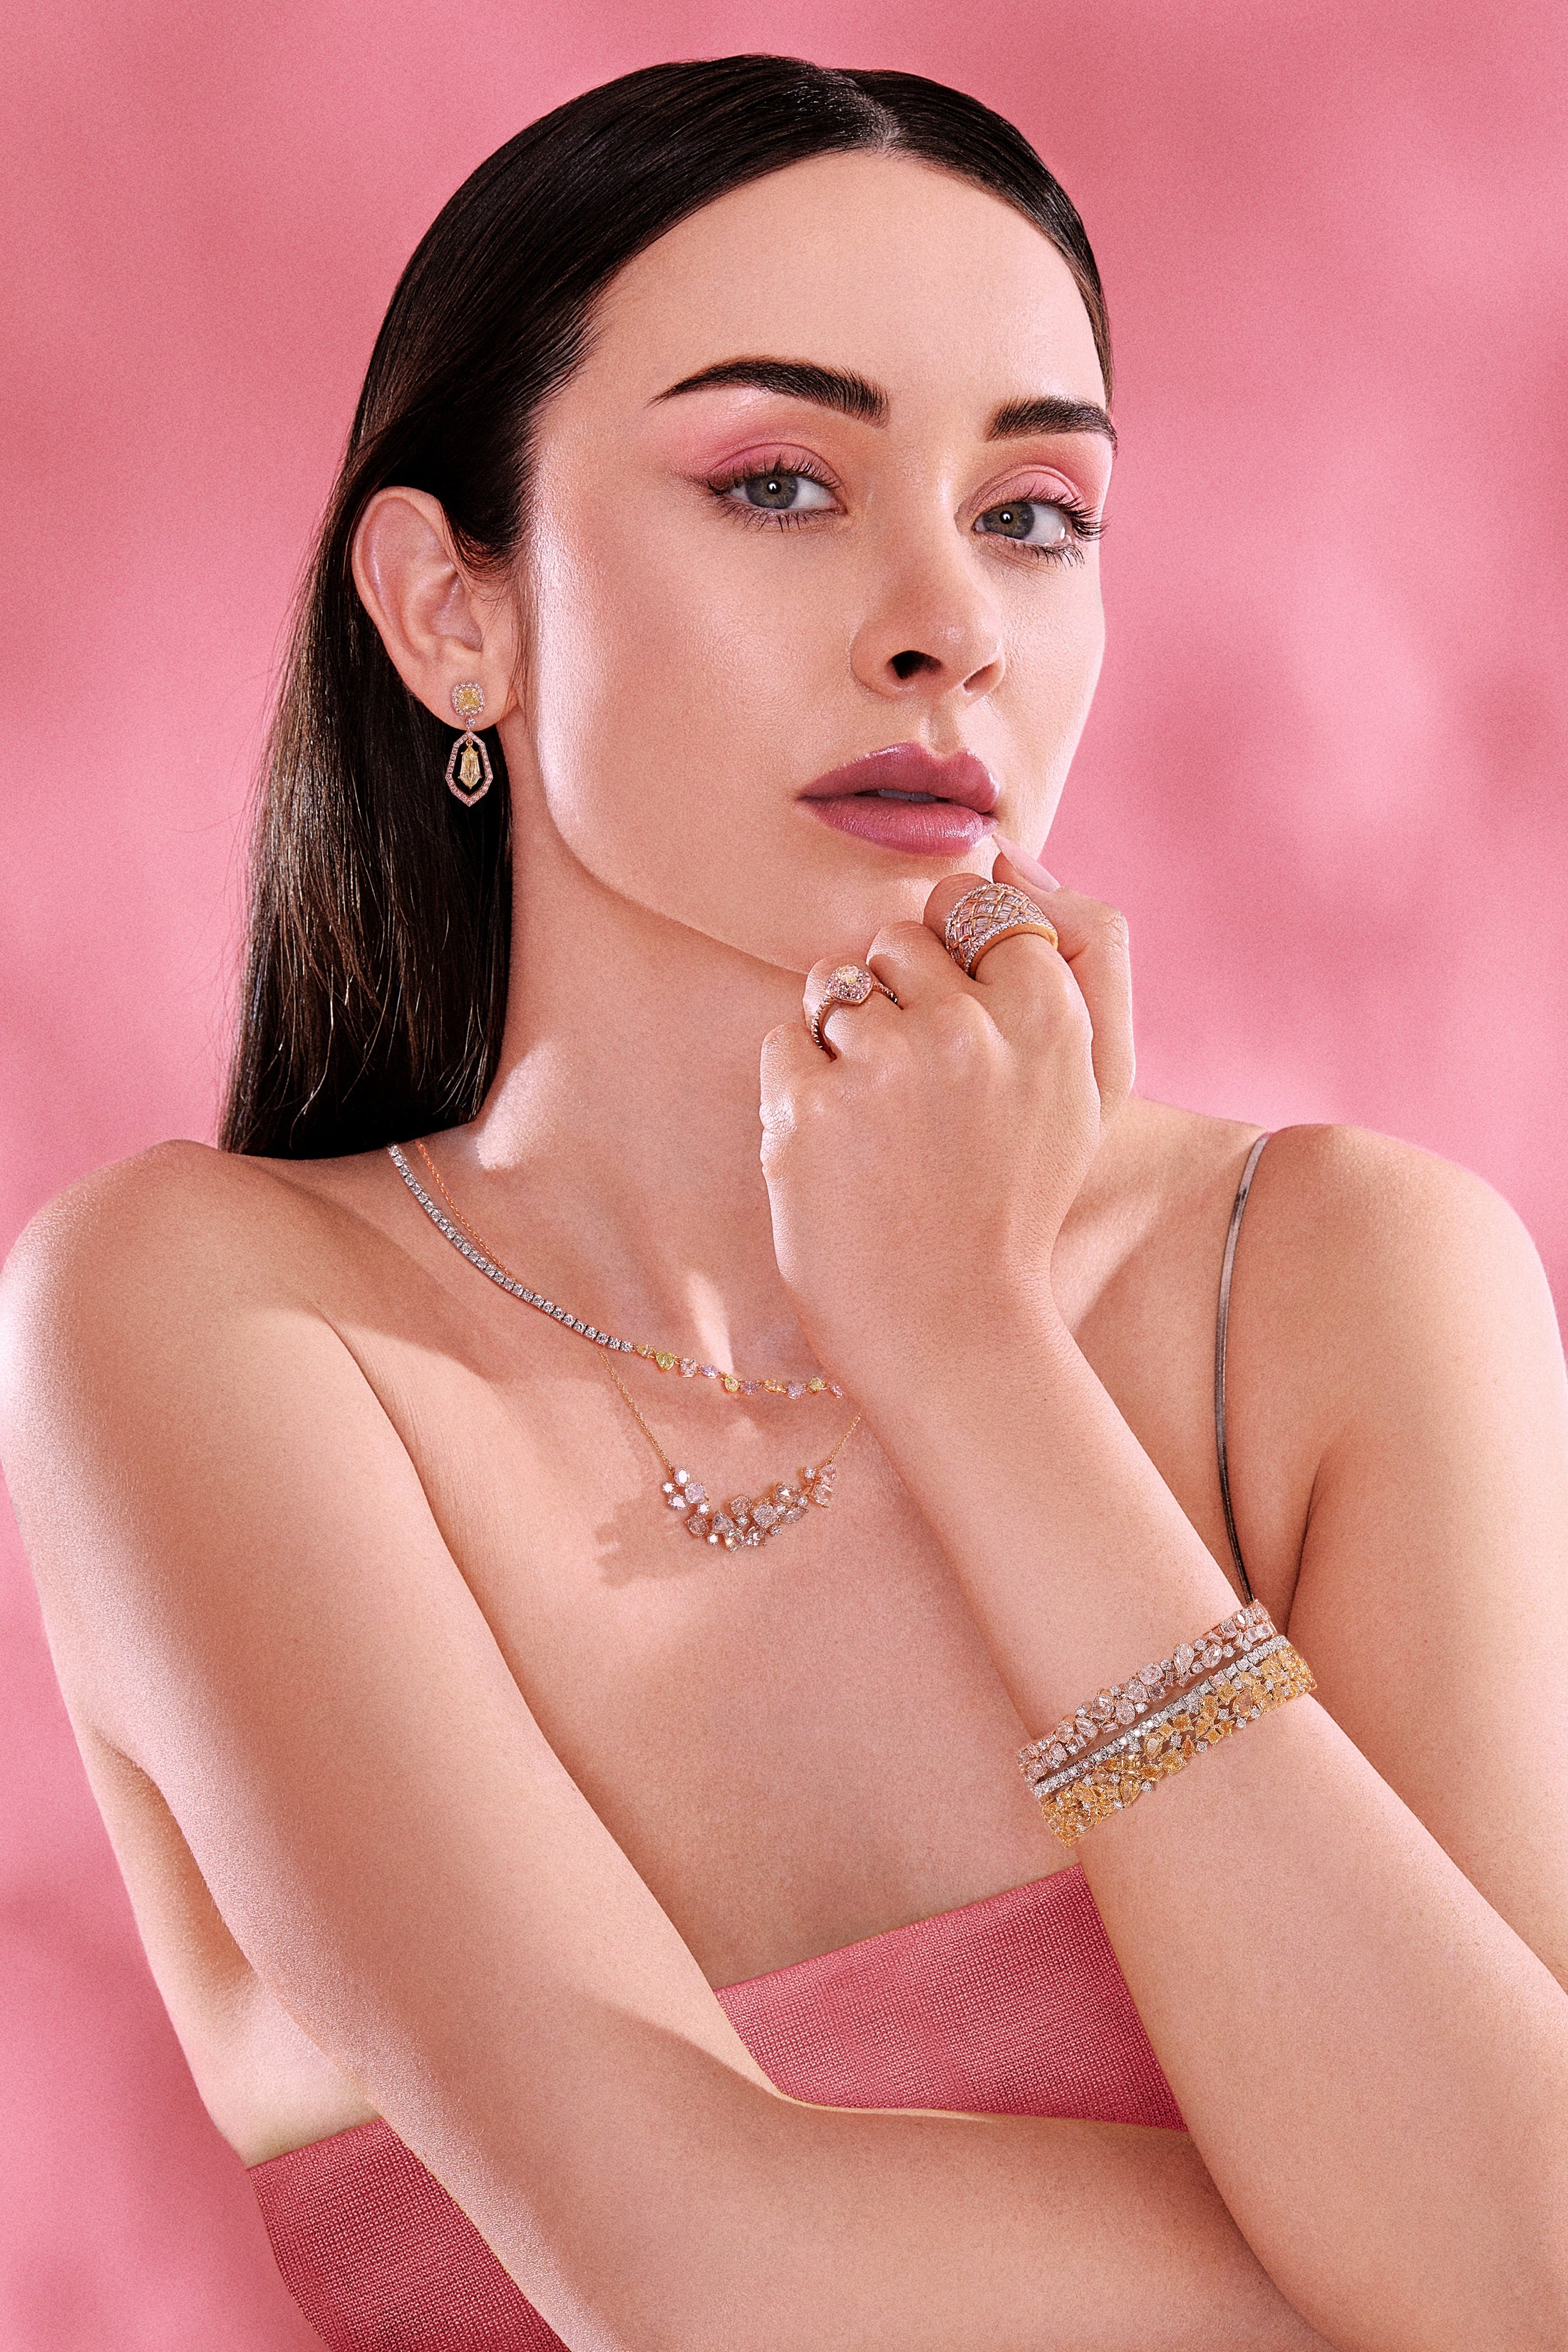 Mixed Shape Pink Diamond Necklace - Pink Diamonds, J FINE - J Fine, necklace - Pink Diamond Jewelry, cluster-pink-diamond-necklace-by-j-fine - Argyle Pink Diamonds